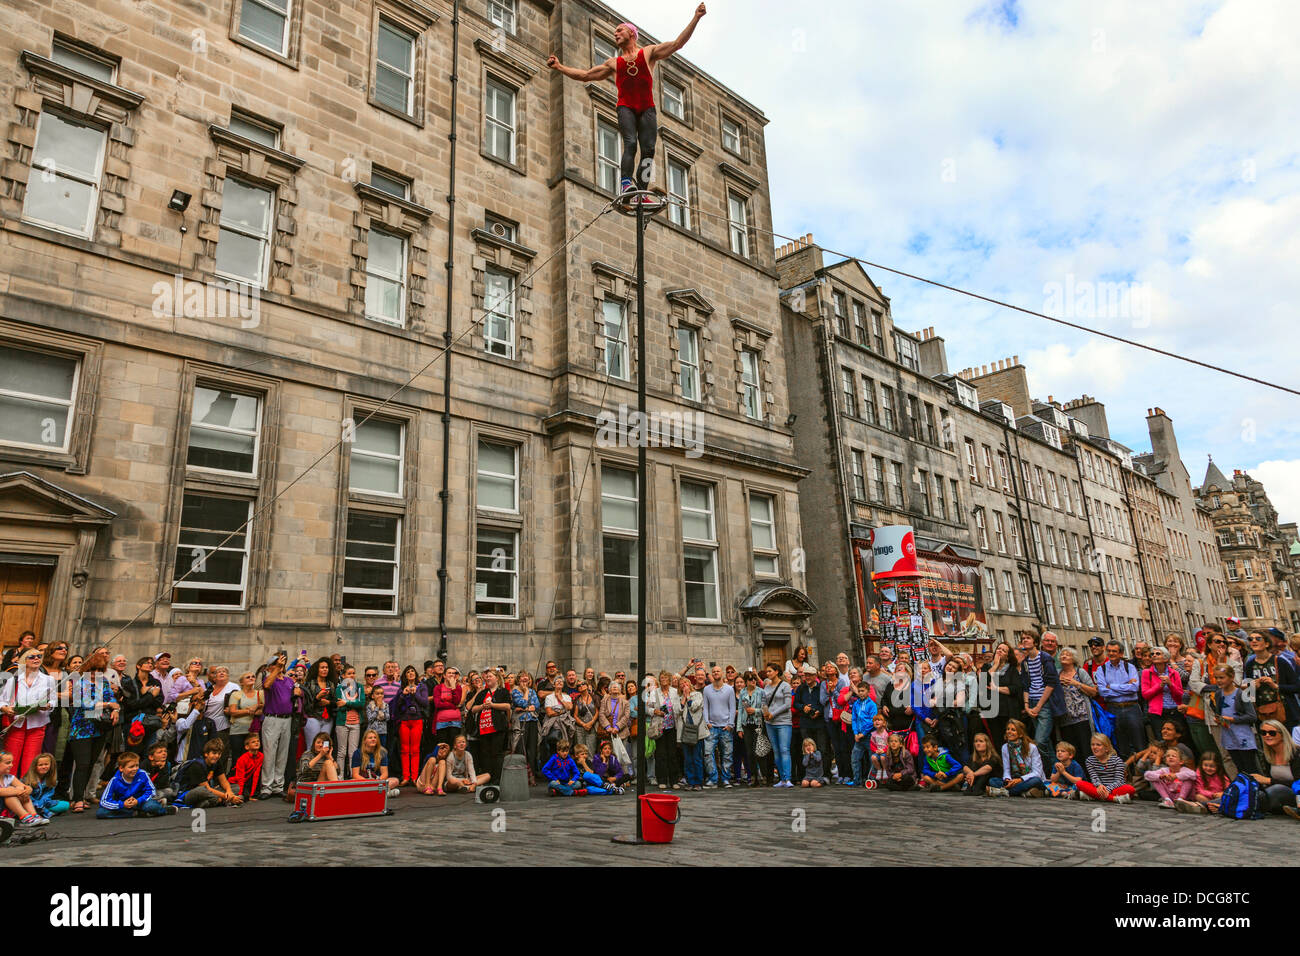 Acrobat durchführen einer Abwägung Handeln an einem Mast, Royal Mile, Edinburgh Fringe Festival, Edinburgh, Schottland, Vereinigtes Königreich Stockfoto